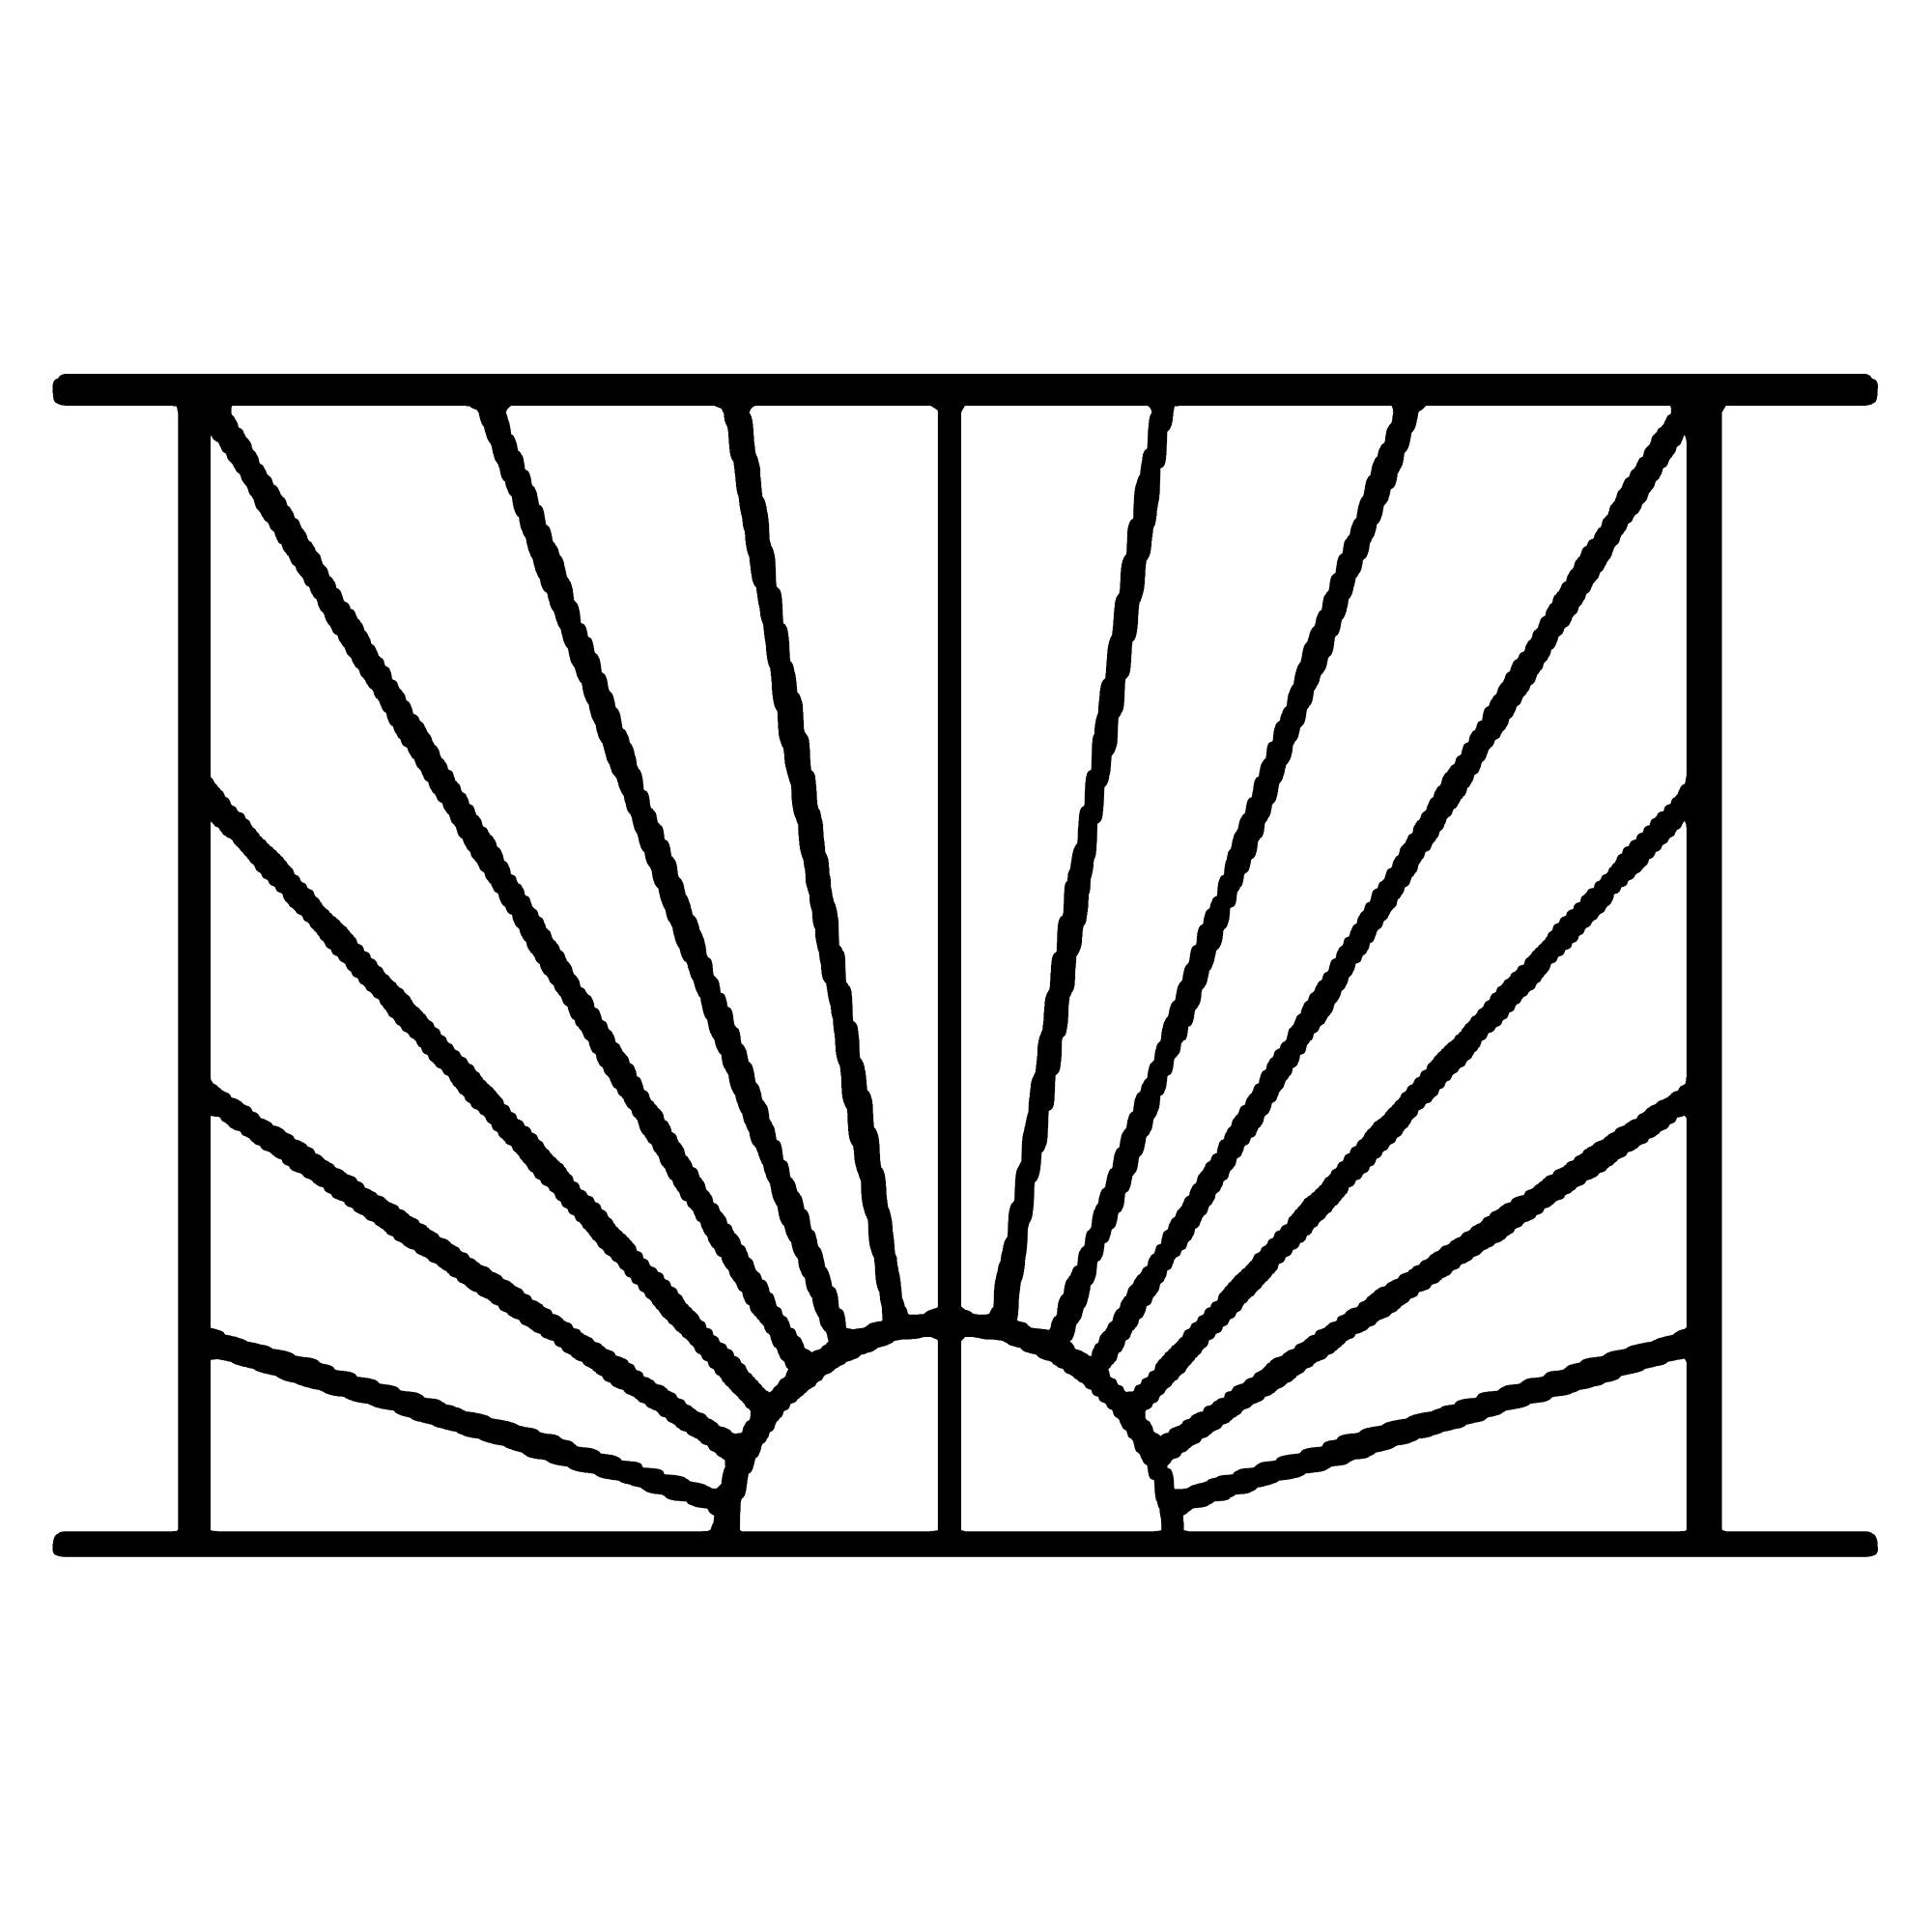 Grille de Defense Soleil pour Fenetre H= 95 cm x L= 140 cm (côte tableau) 4